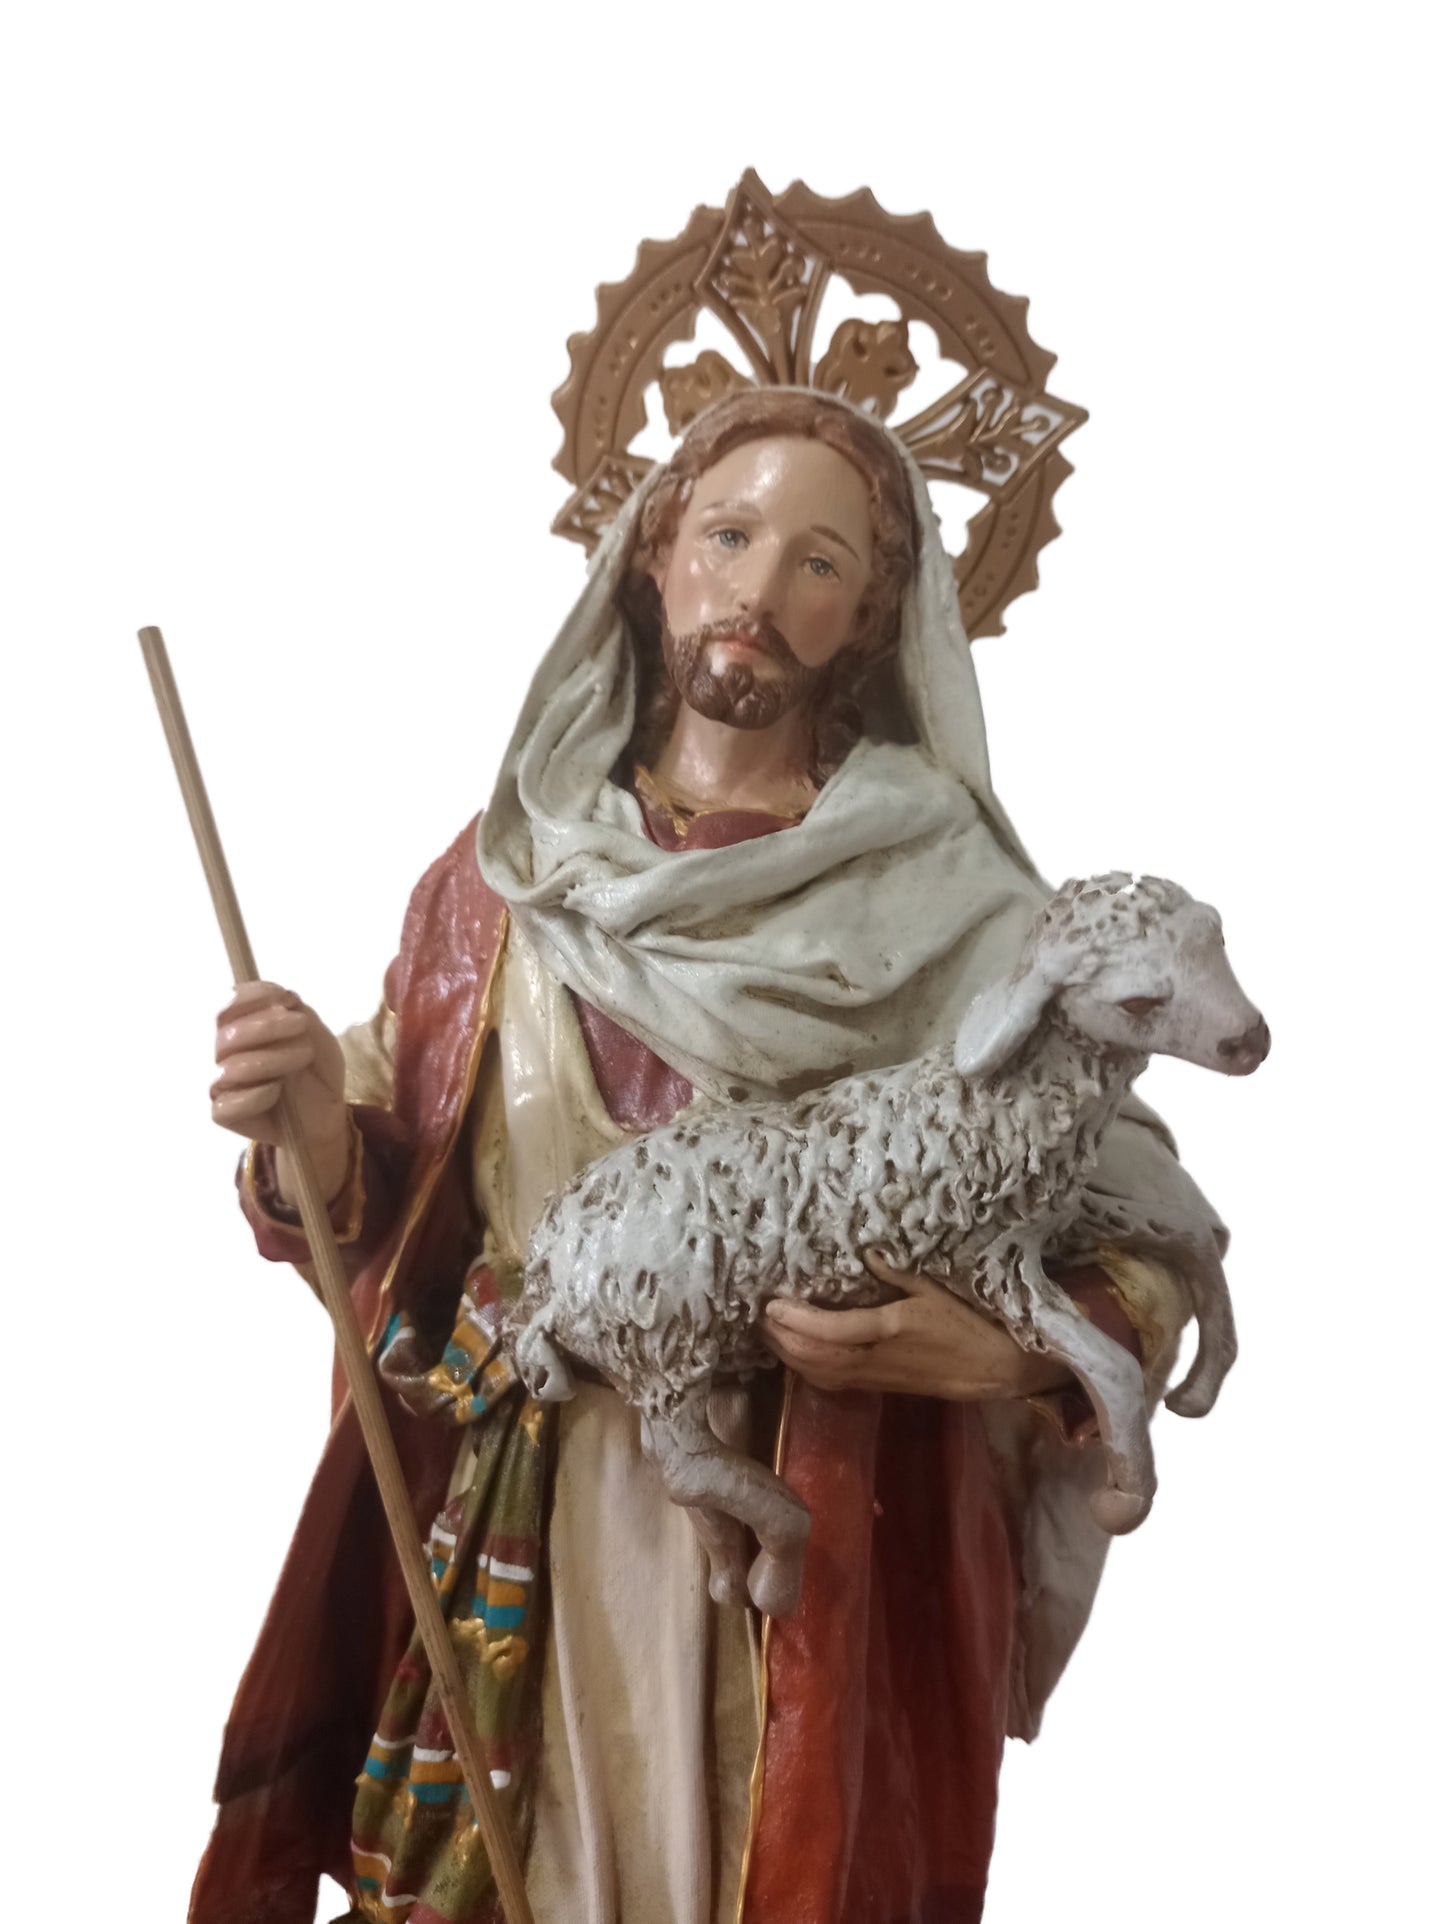 Good Shepherd - Jesus Christ - Handcrafted figurine - kmnk deco